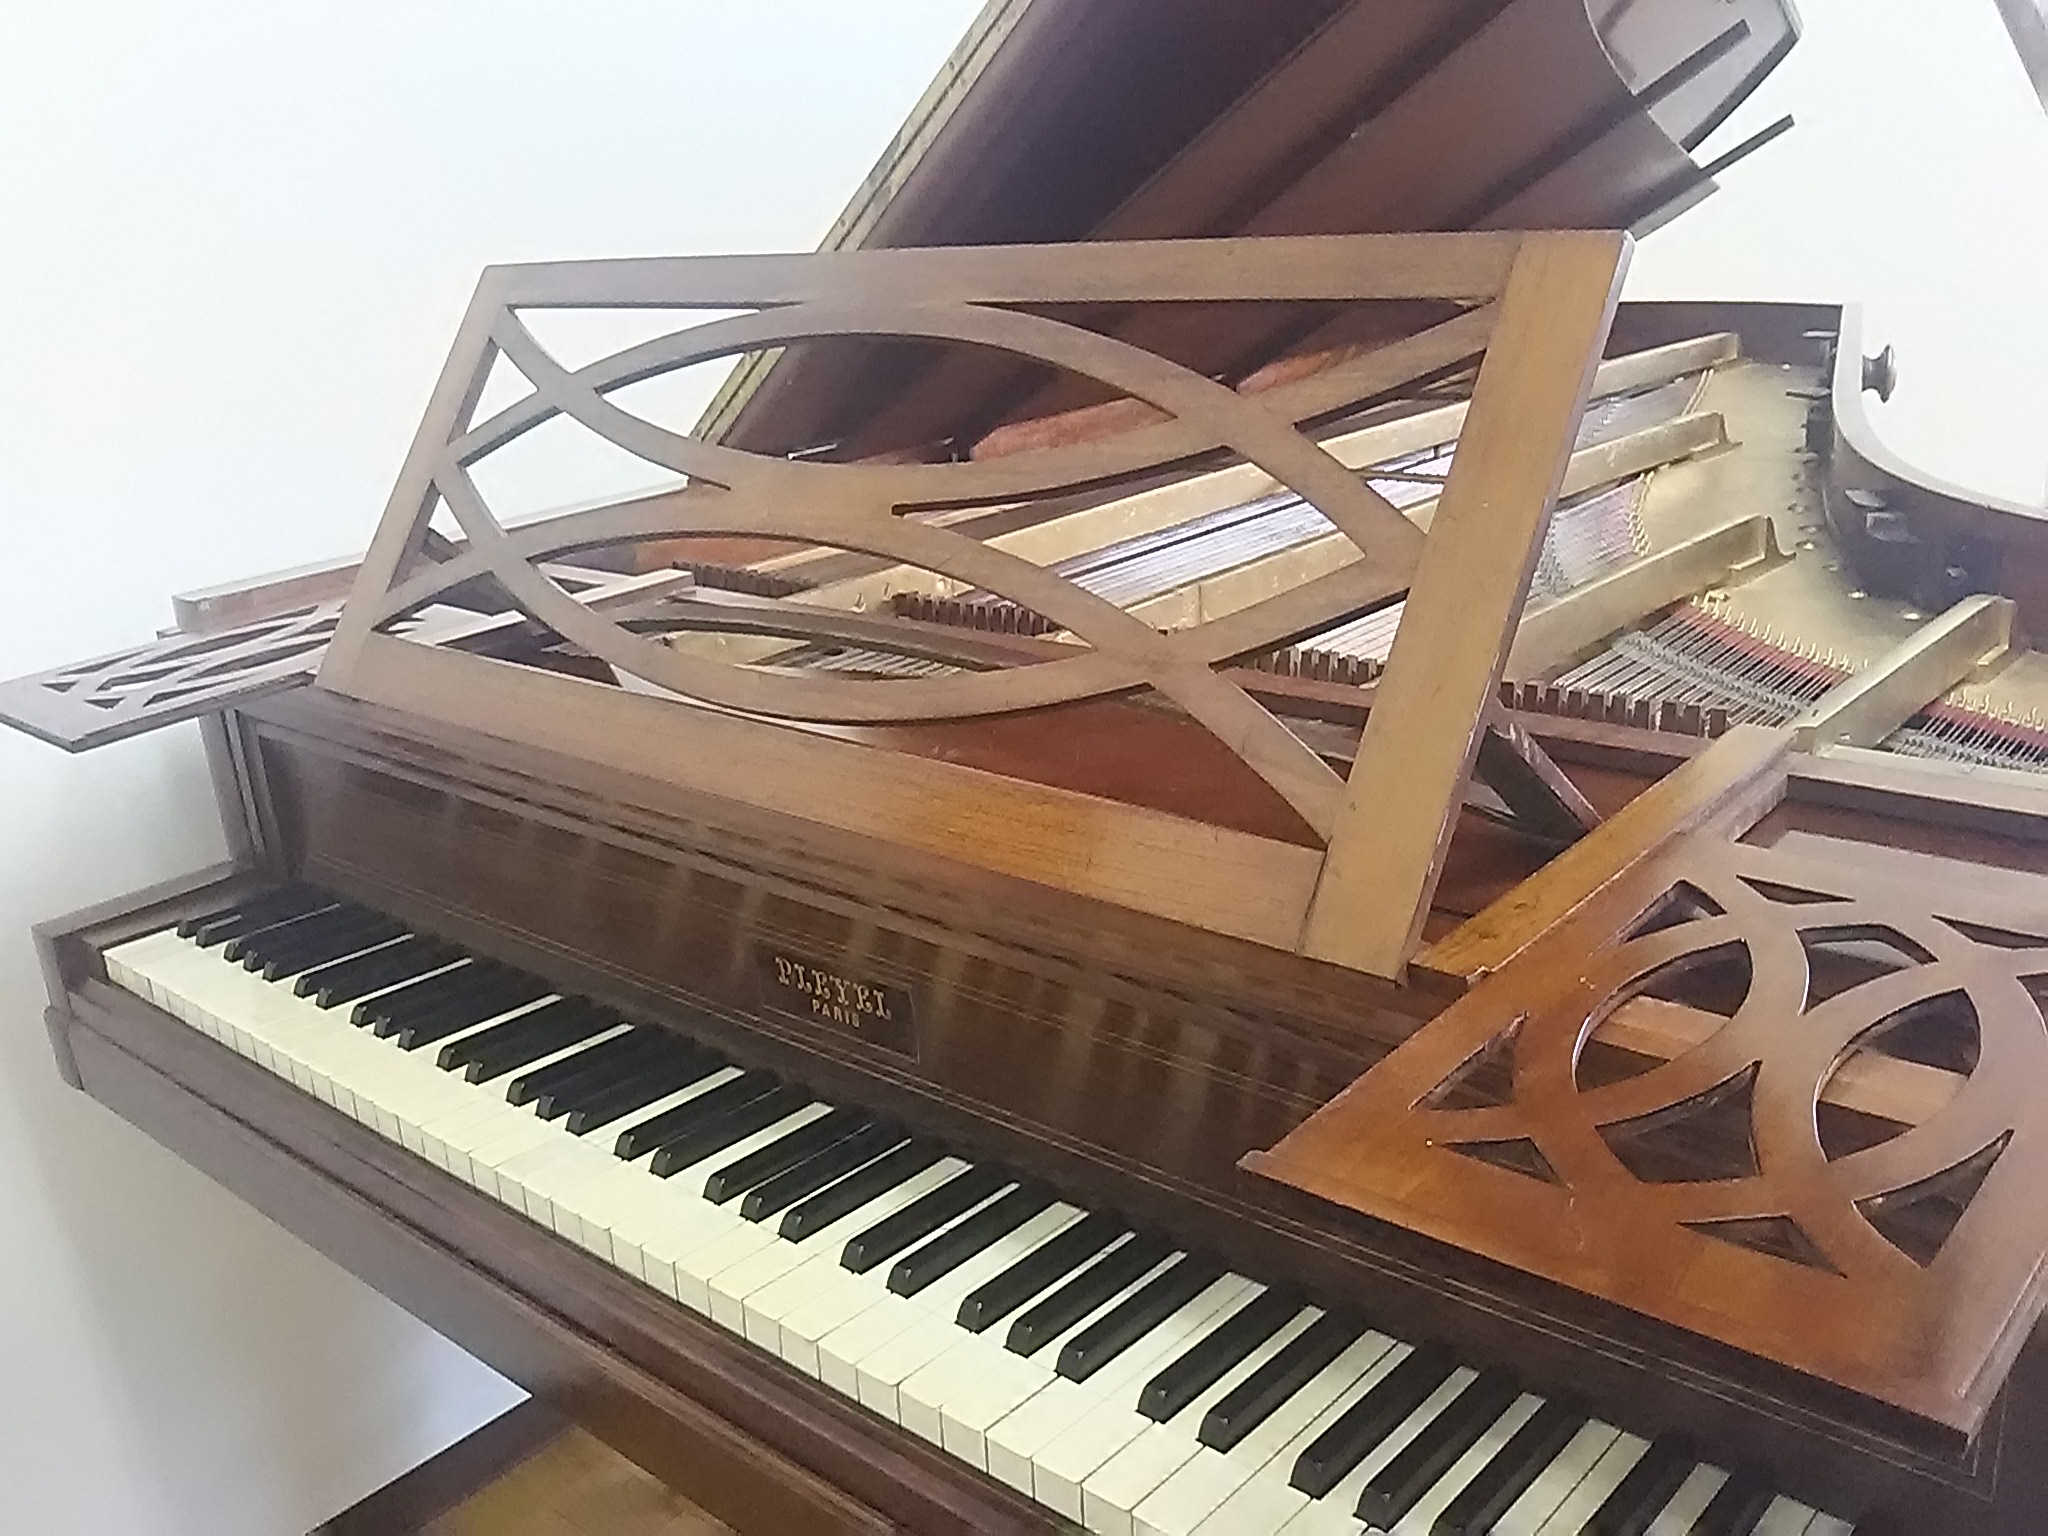 カミーユ プレイエル1848年製作フォルテピアノ 自己紹介 八百板チェンバロ教室